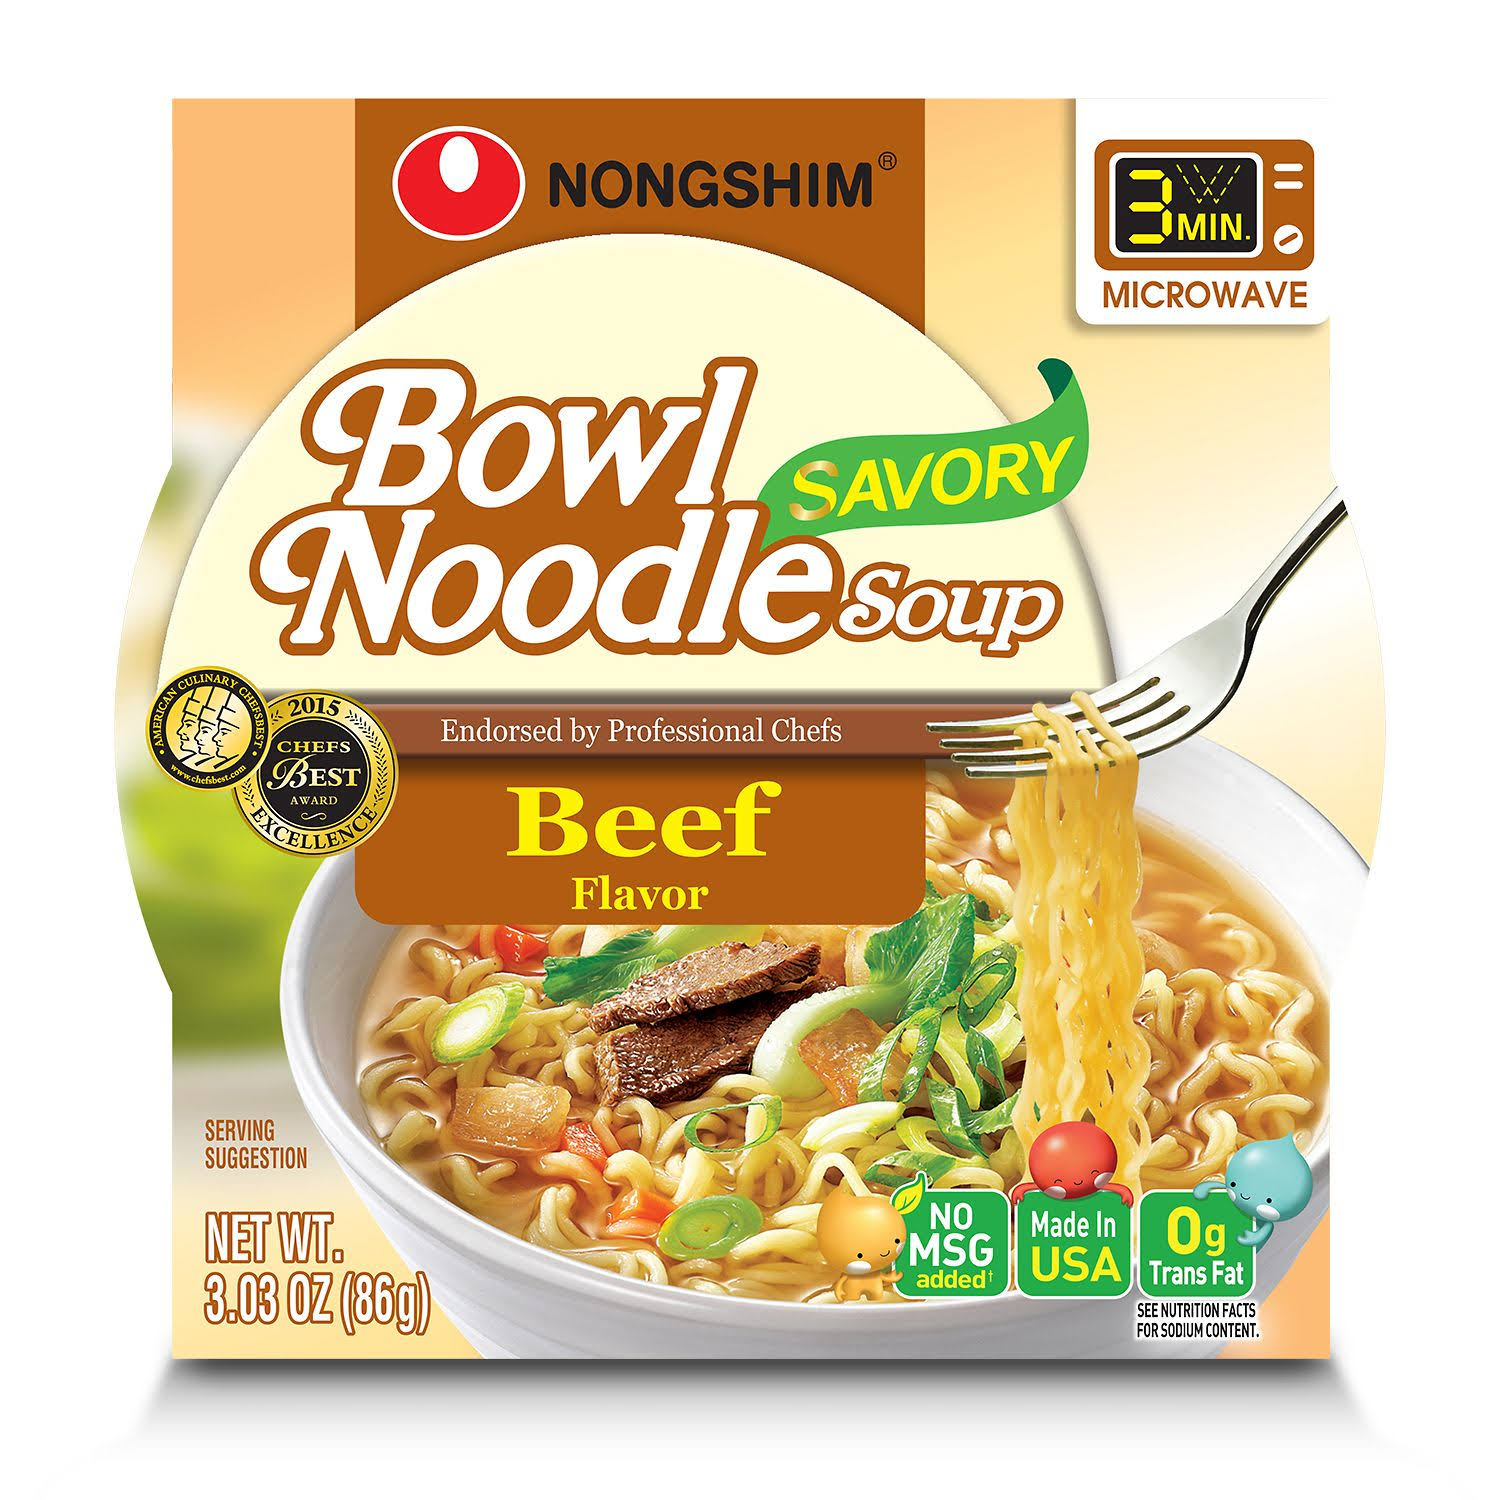 Nongshim Savory Bowl Noodle Soup - Beef Flavor, 3.03oz